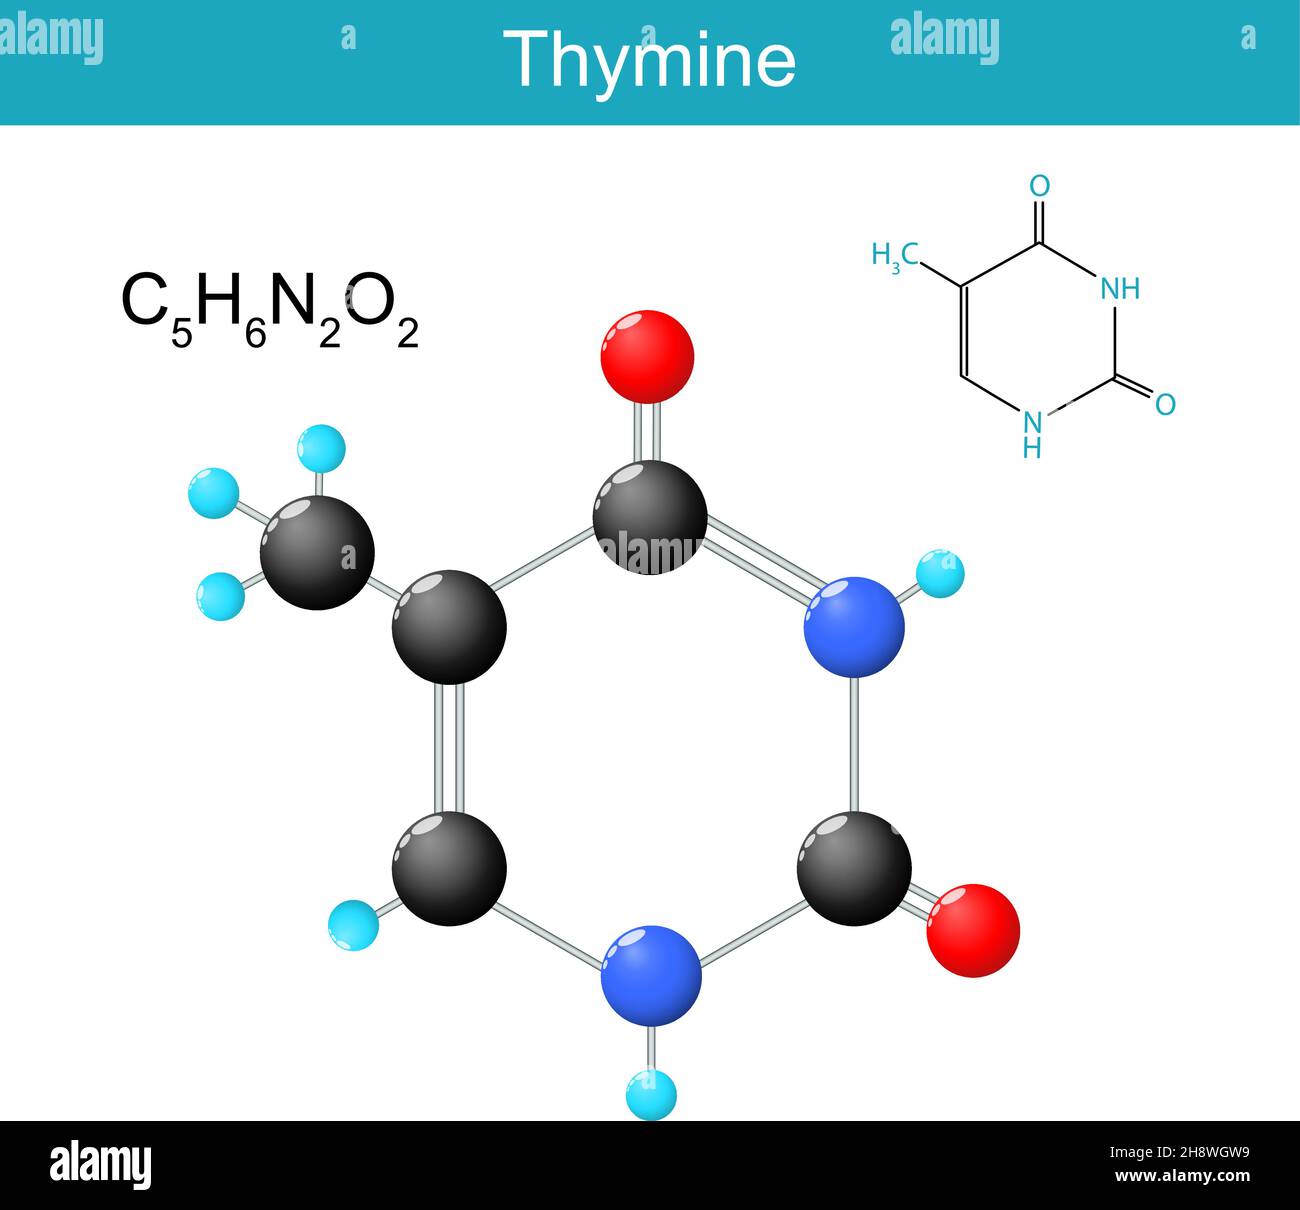 Thymin-Molekülformel. Chemische Strukturformel und Modell von Nukleobasen in DNA und RNA gefunden. Vektorgrafik Stock Vektor